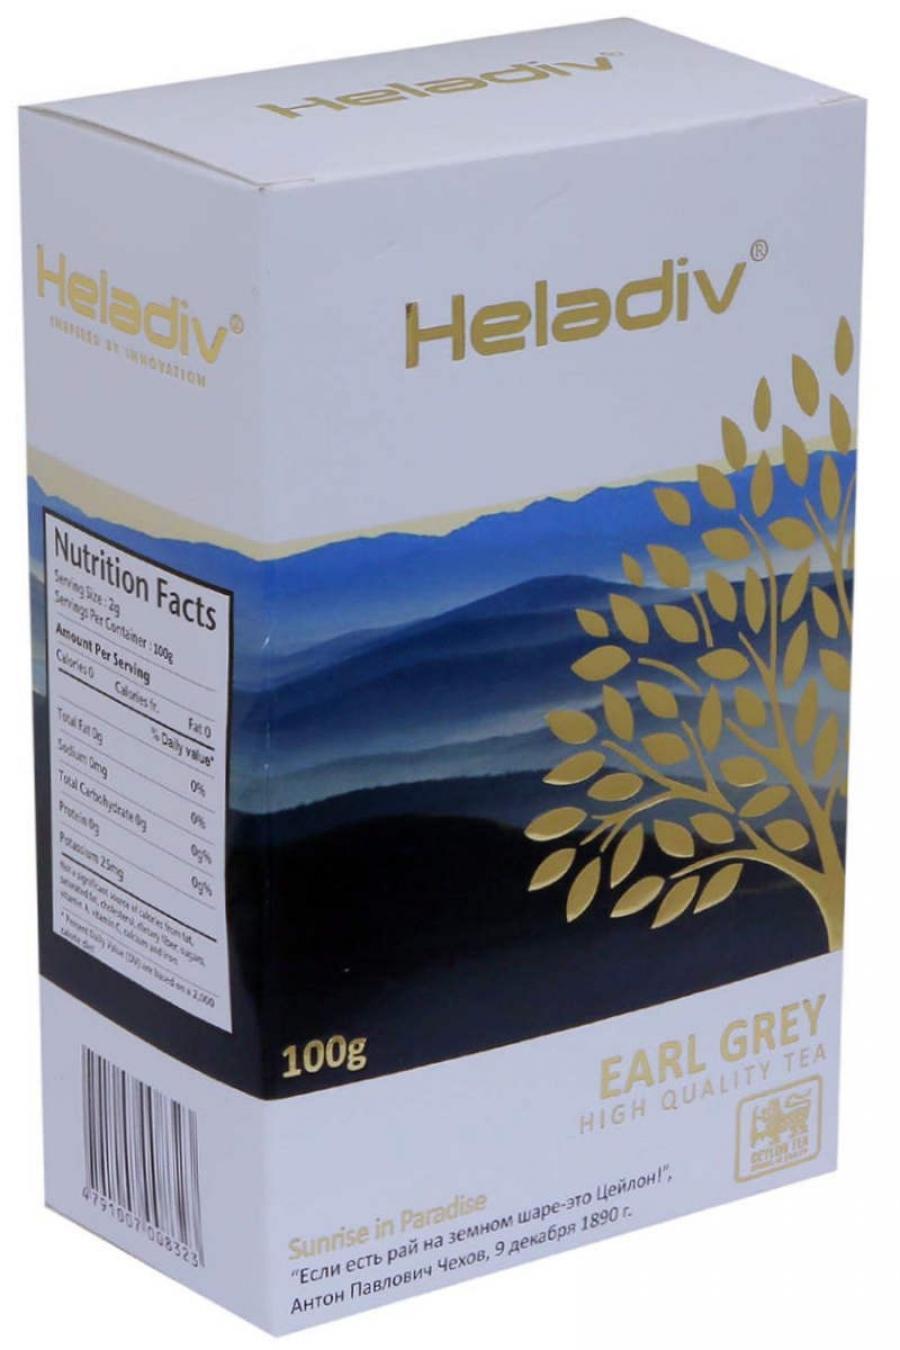 Чай Heladiv Earl Grey Pekoe 100g